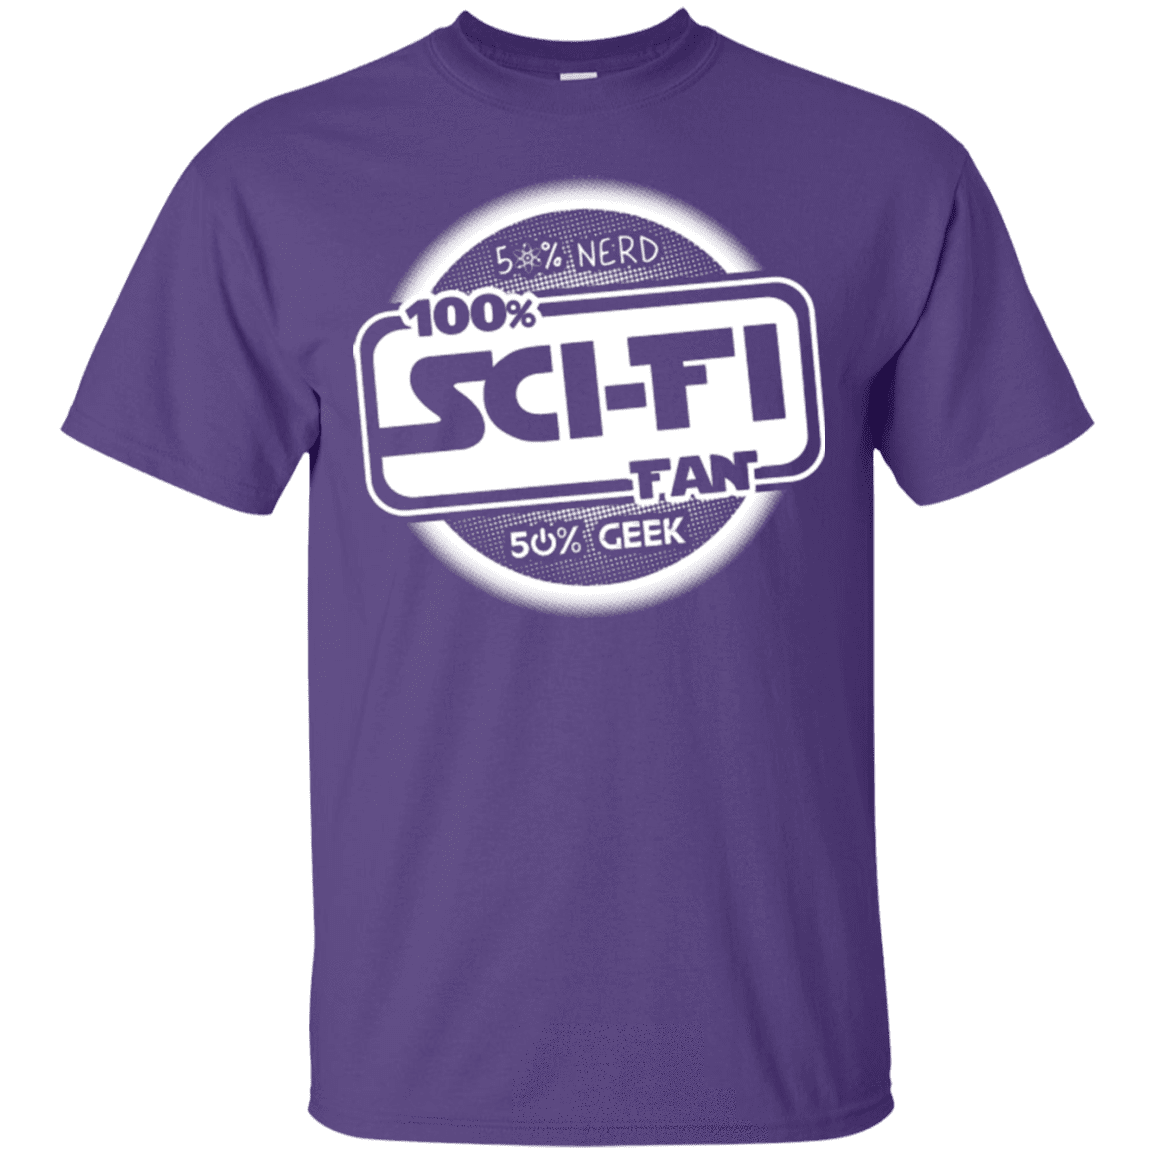 T-Shirts Purple / Small 100 Percent Sci-fi T-Shirt